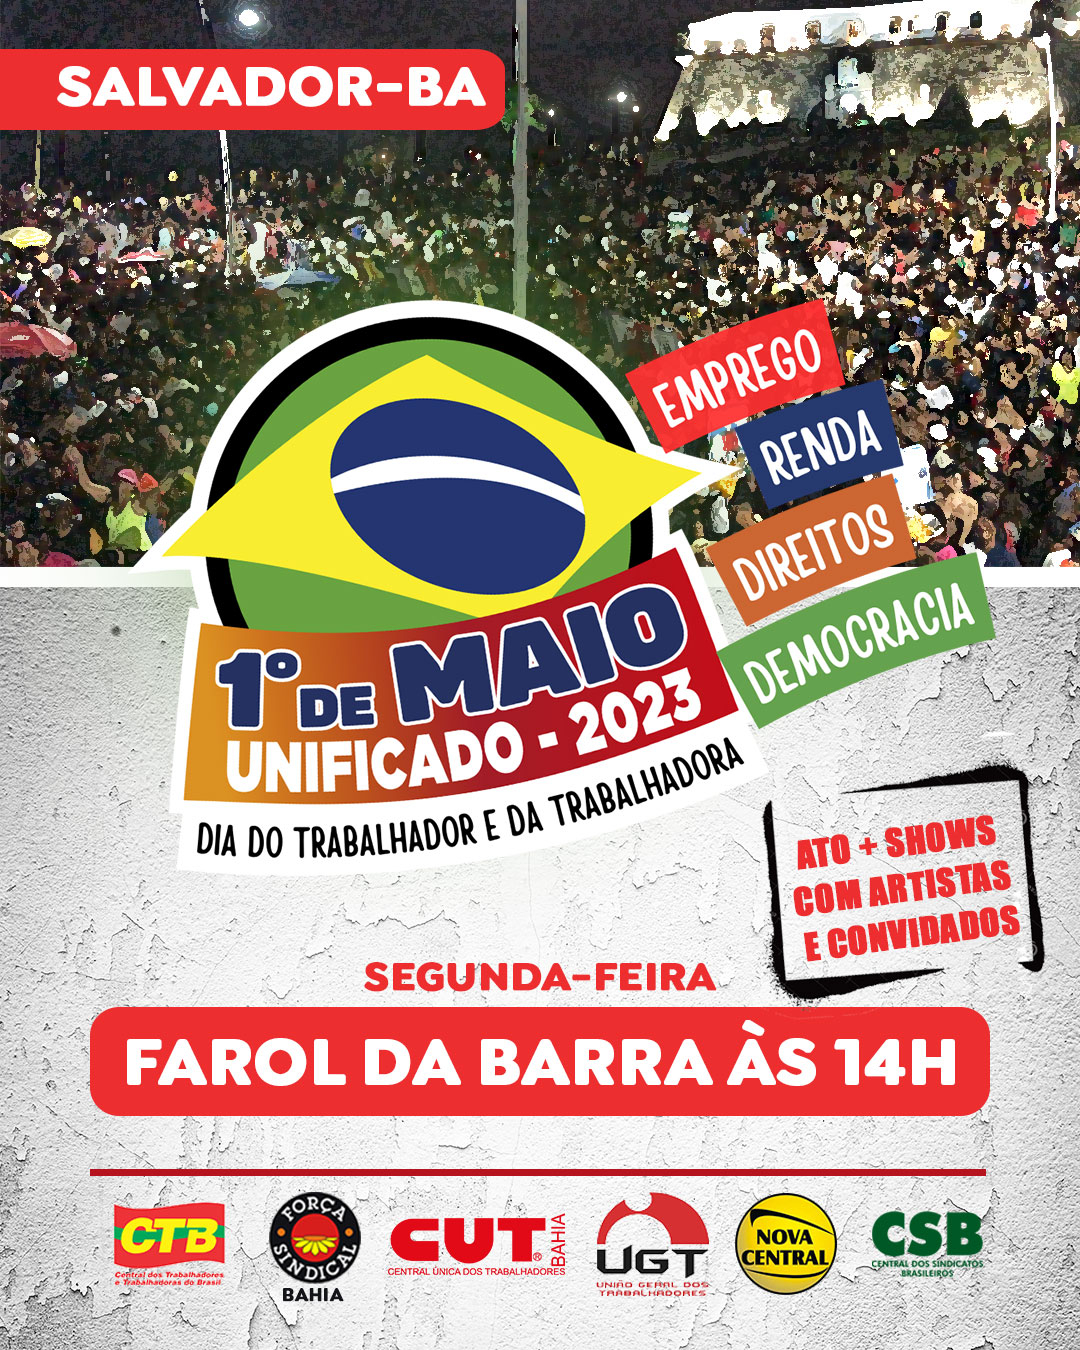 Em Salvador o 1º de maio será no Farol da Barra